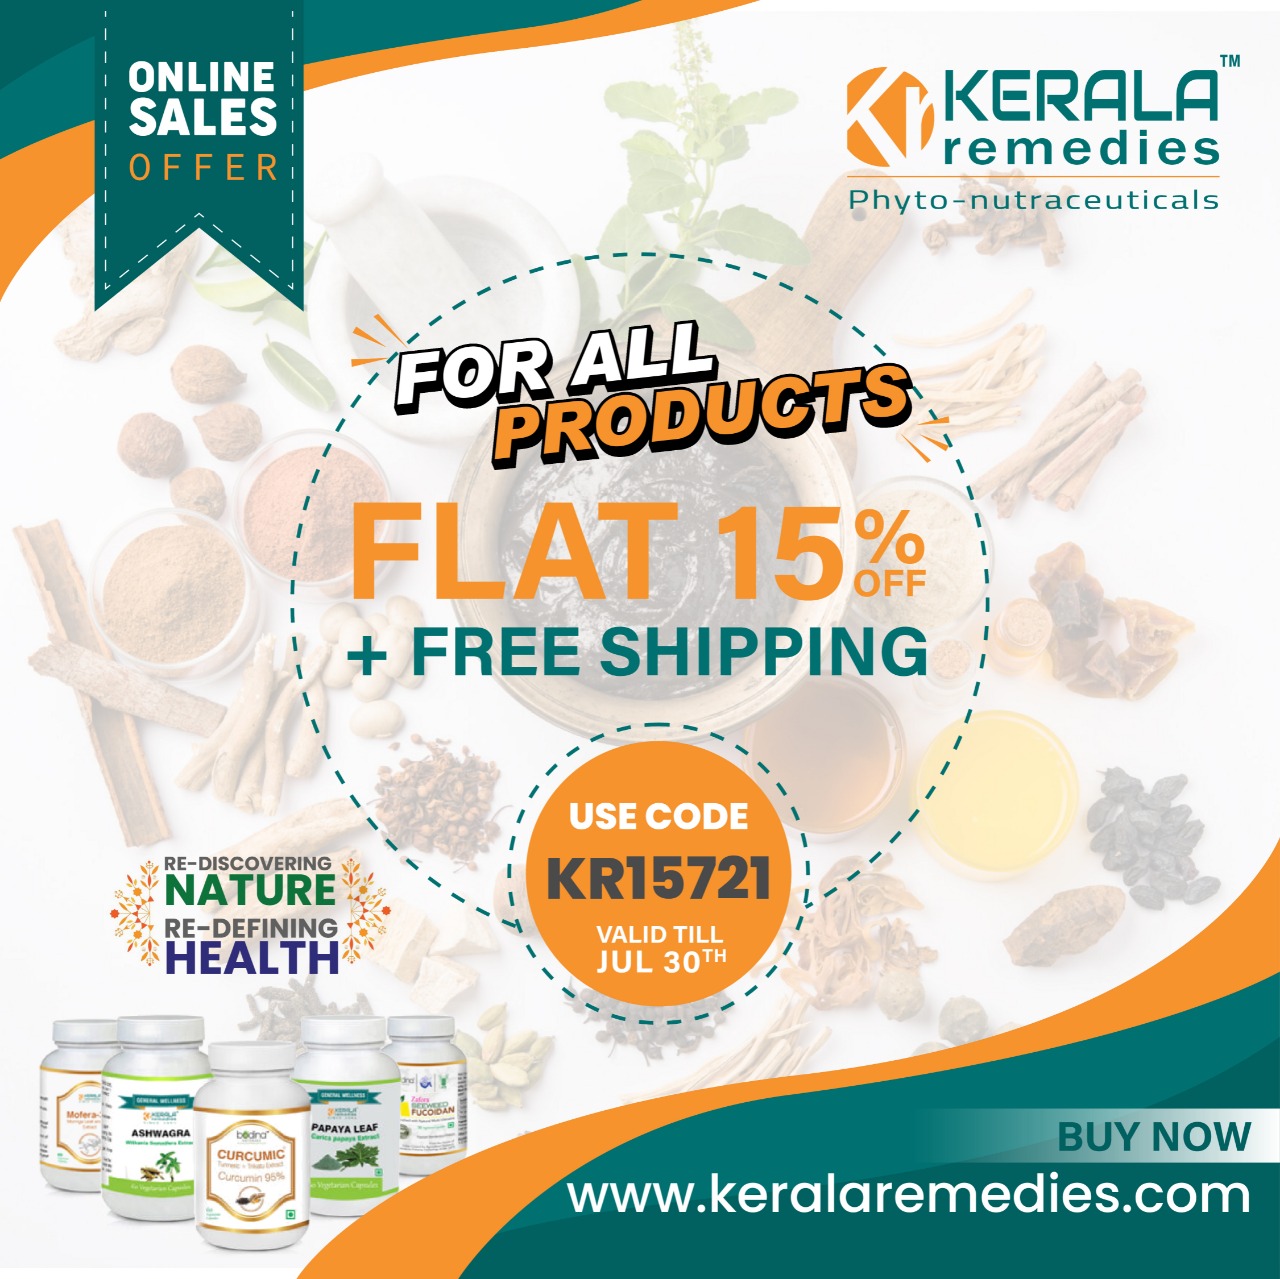 Kerala Remedies